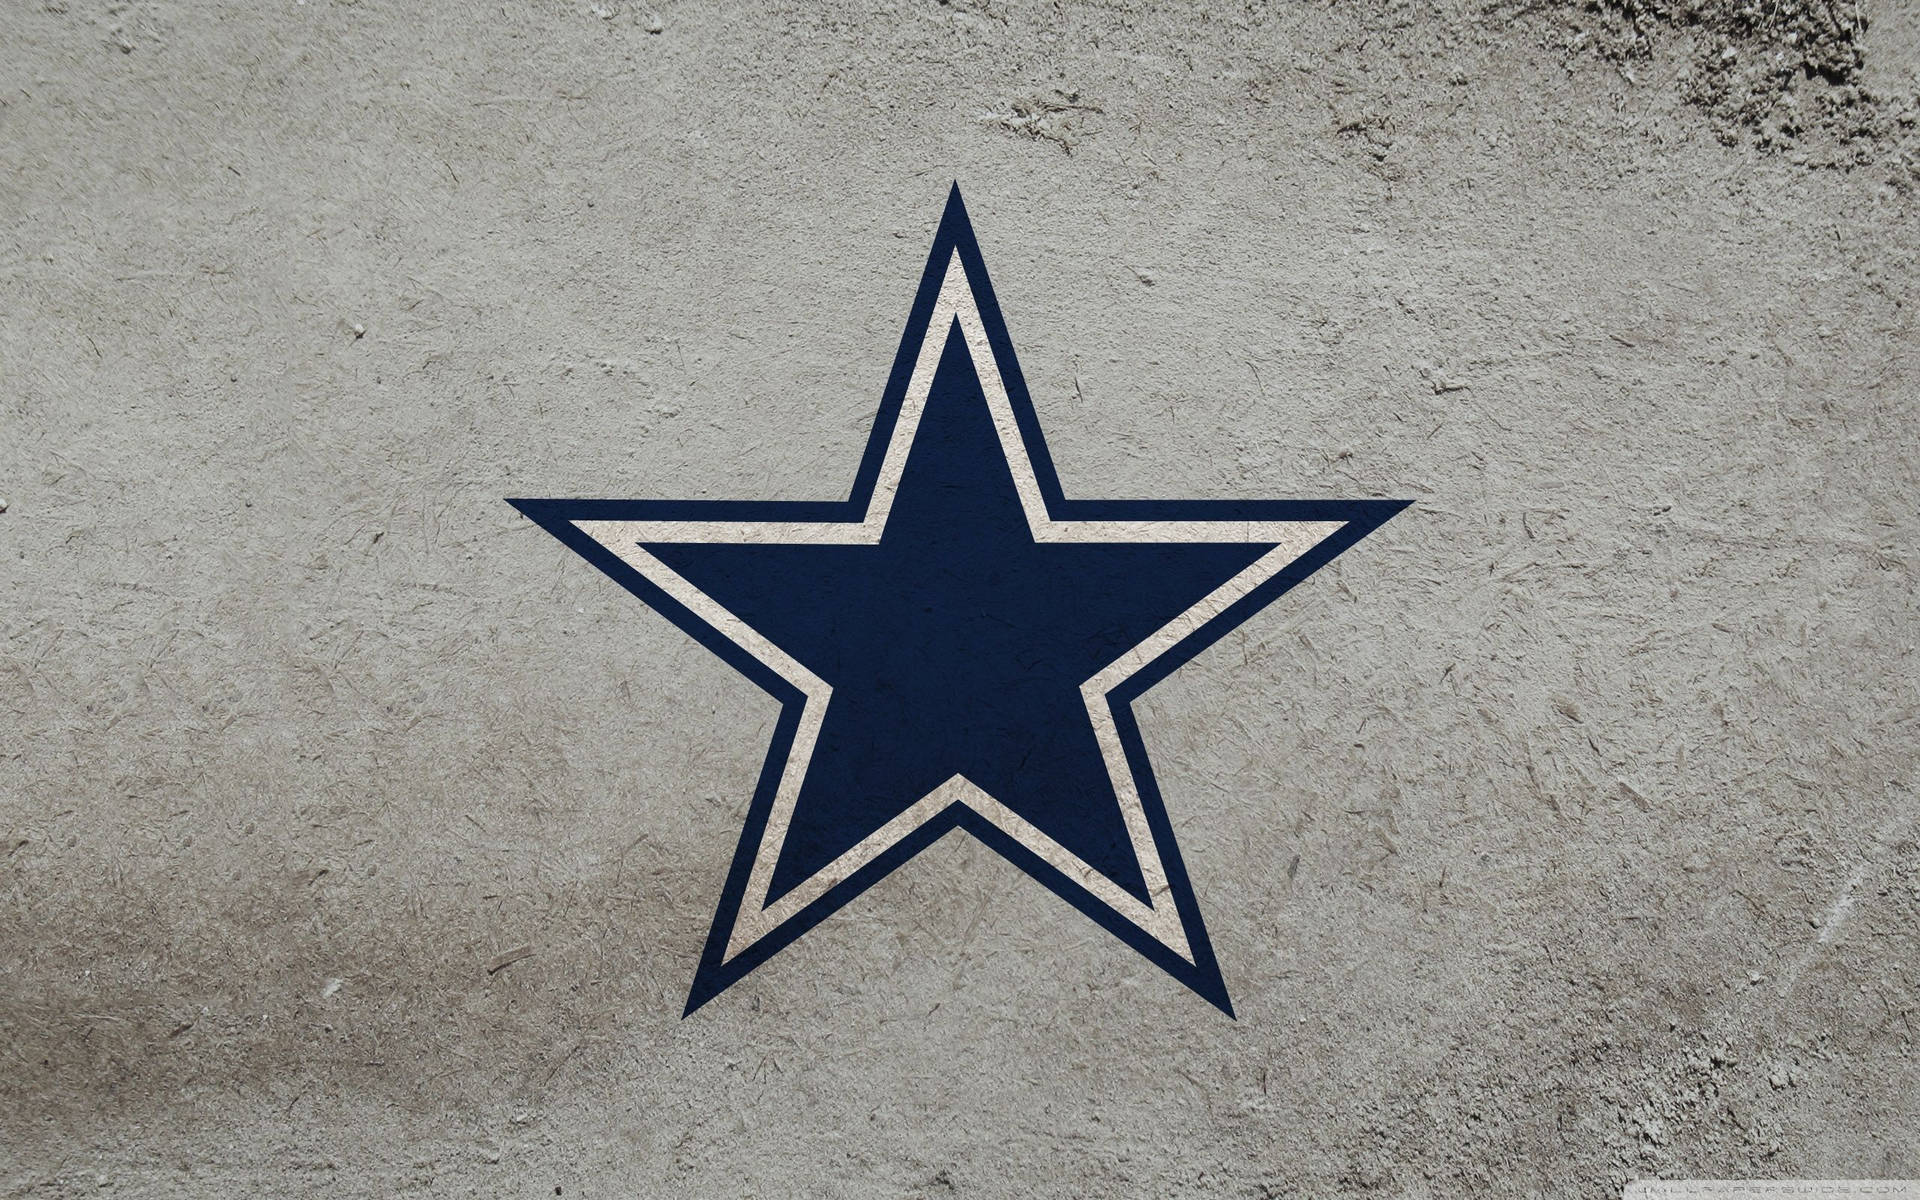 Dallas Cowboys Background